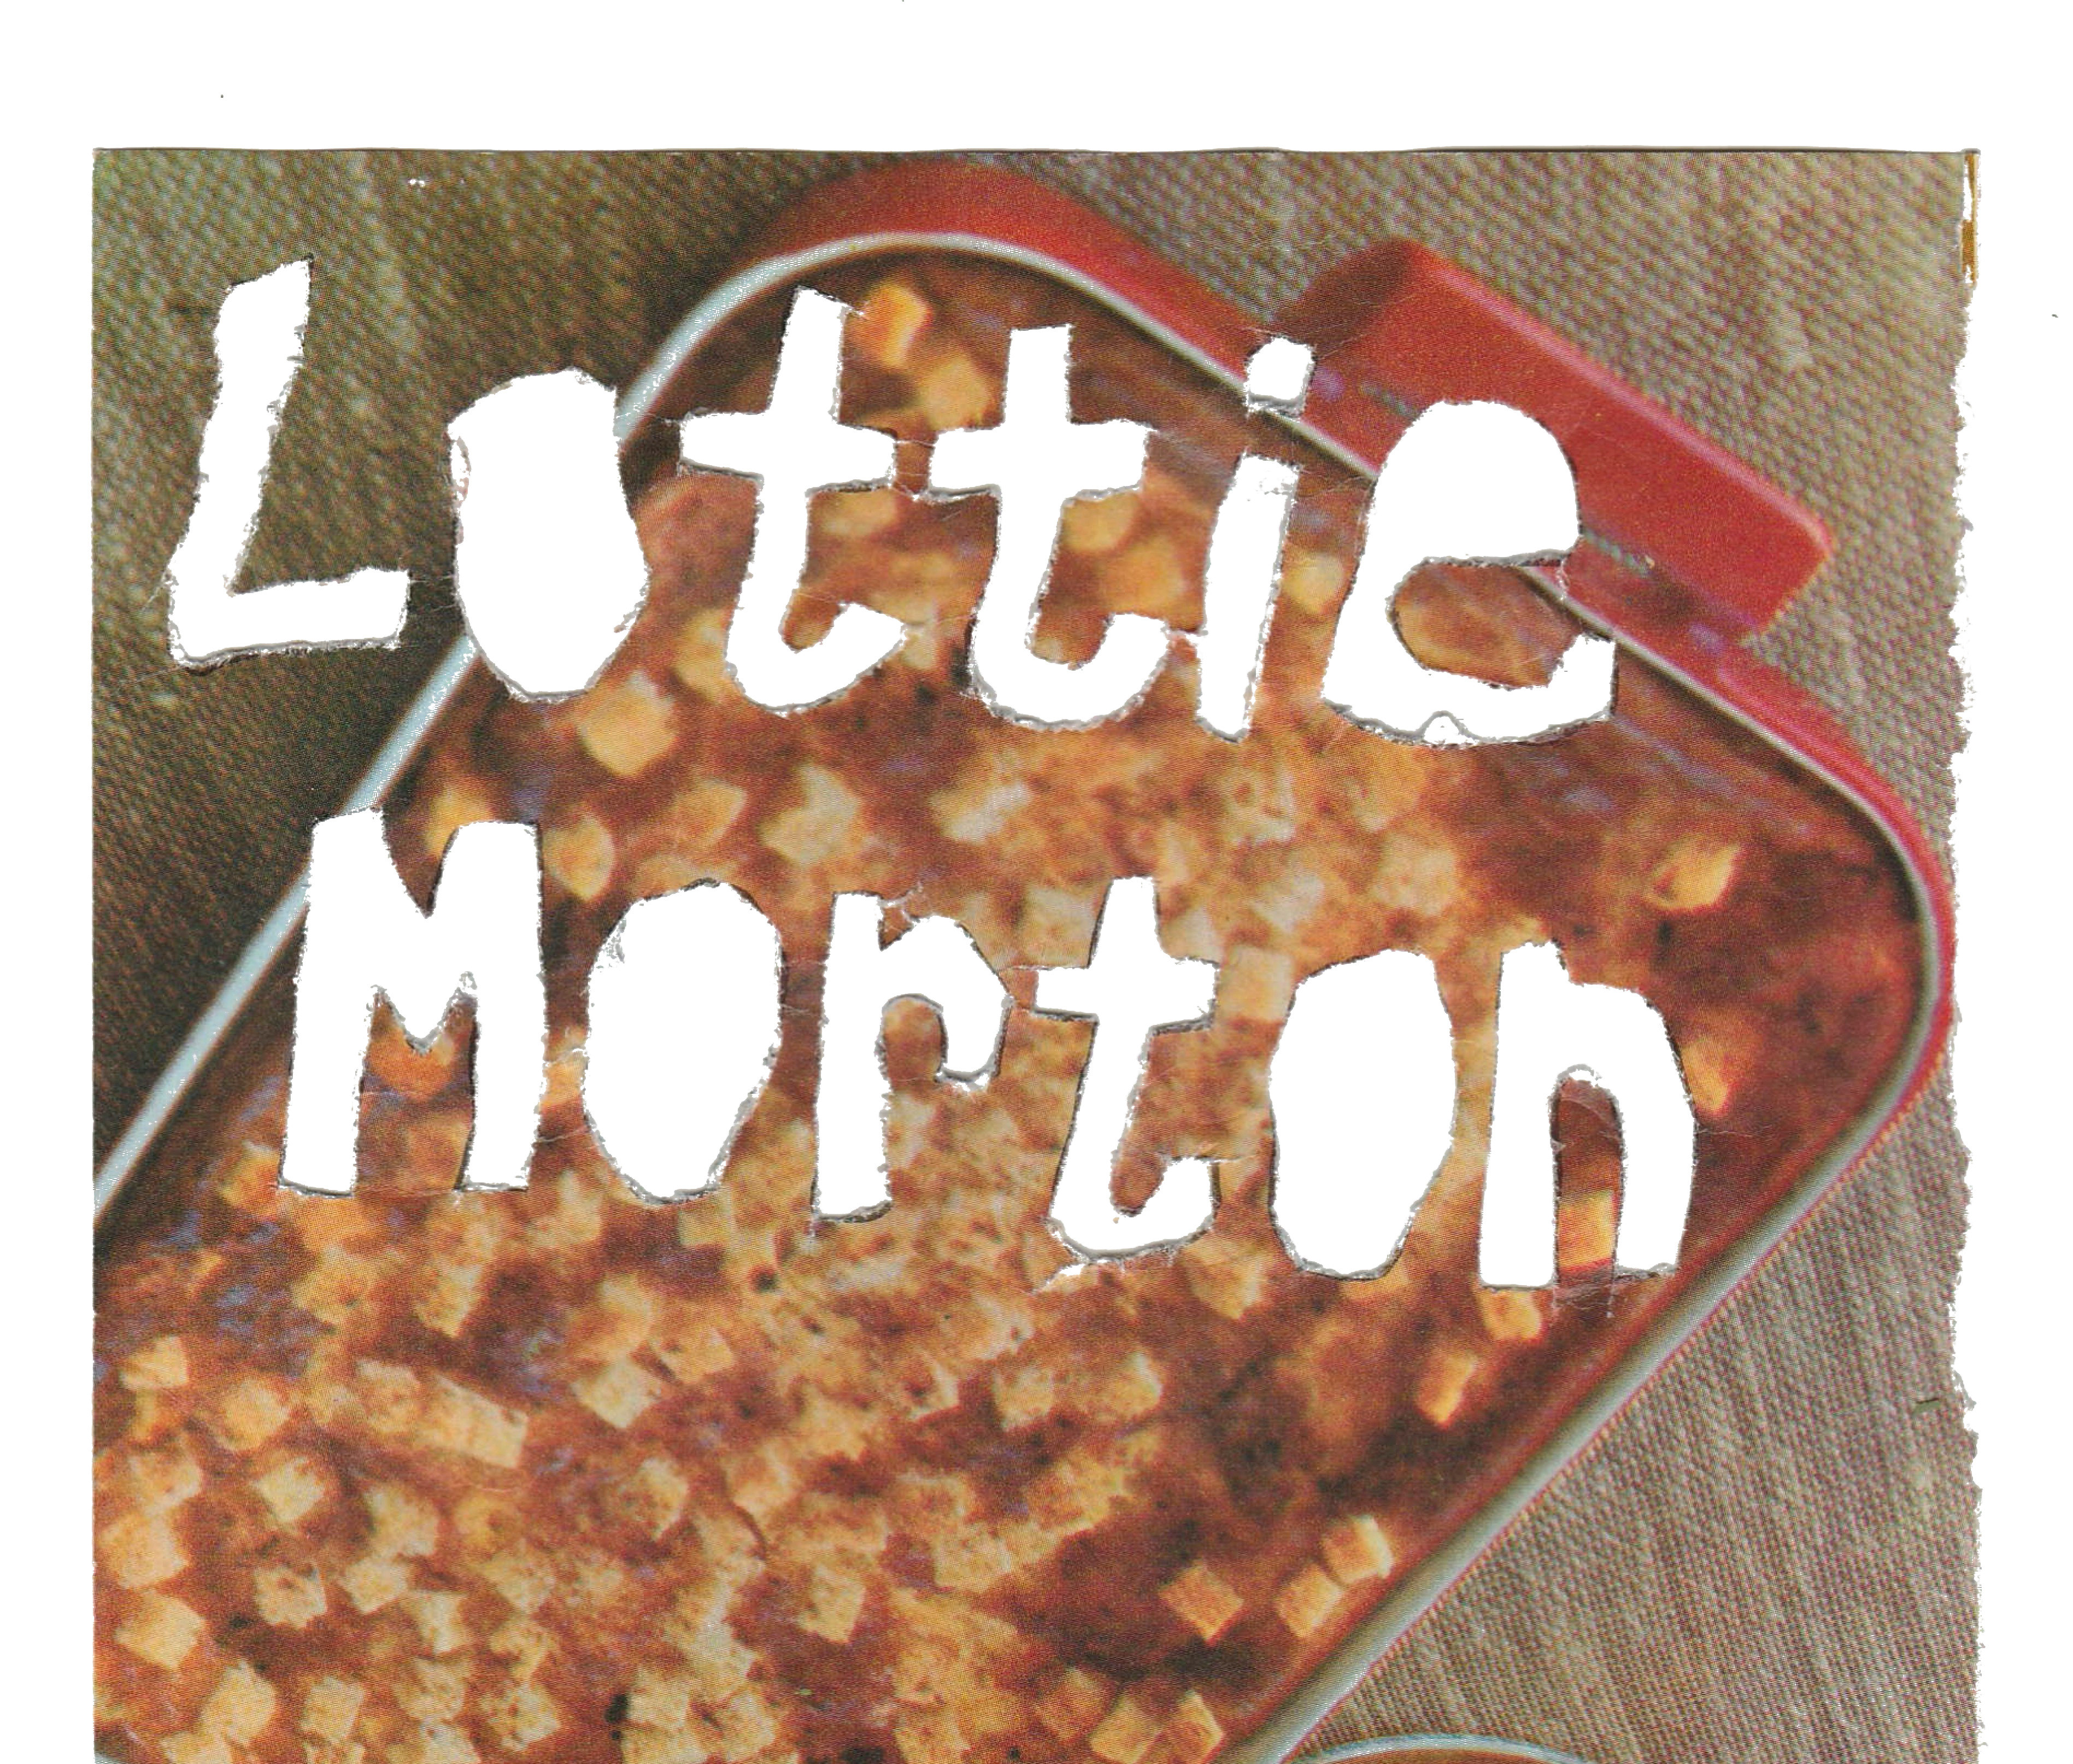 Lottie Morton